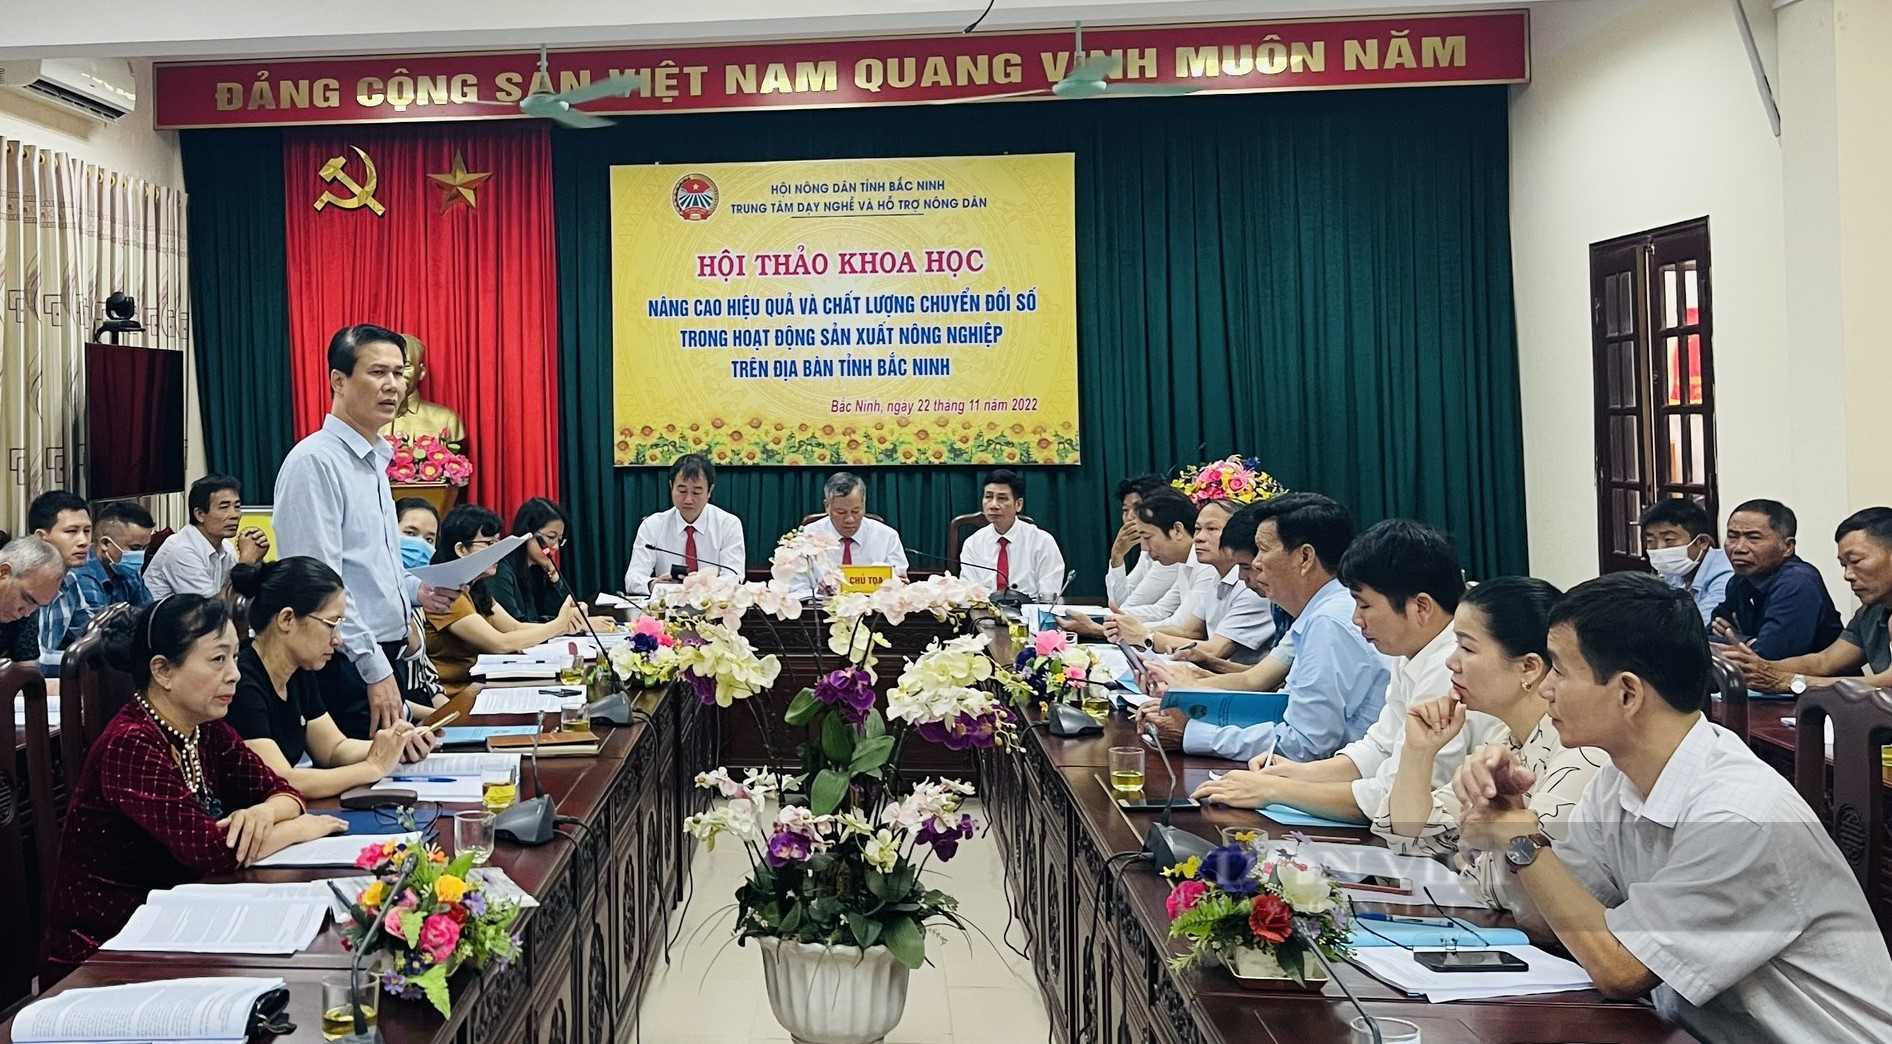 Bắc Ninh hỗ trợ thúc đẩy ứng dụng công nghệ số trong lĩnh vực nông nghiệp - Ảnh 1.